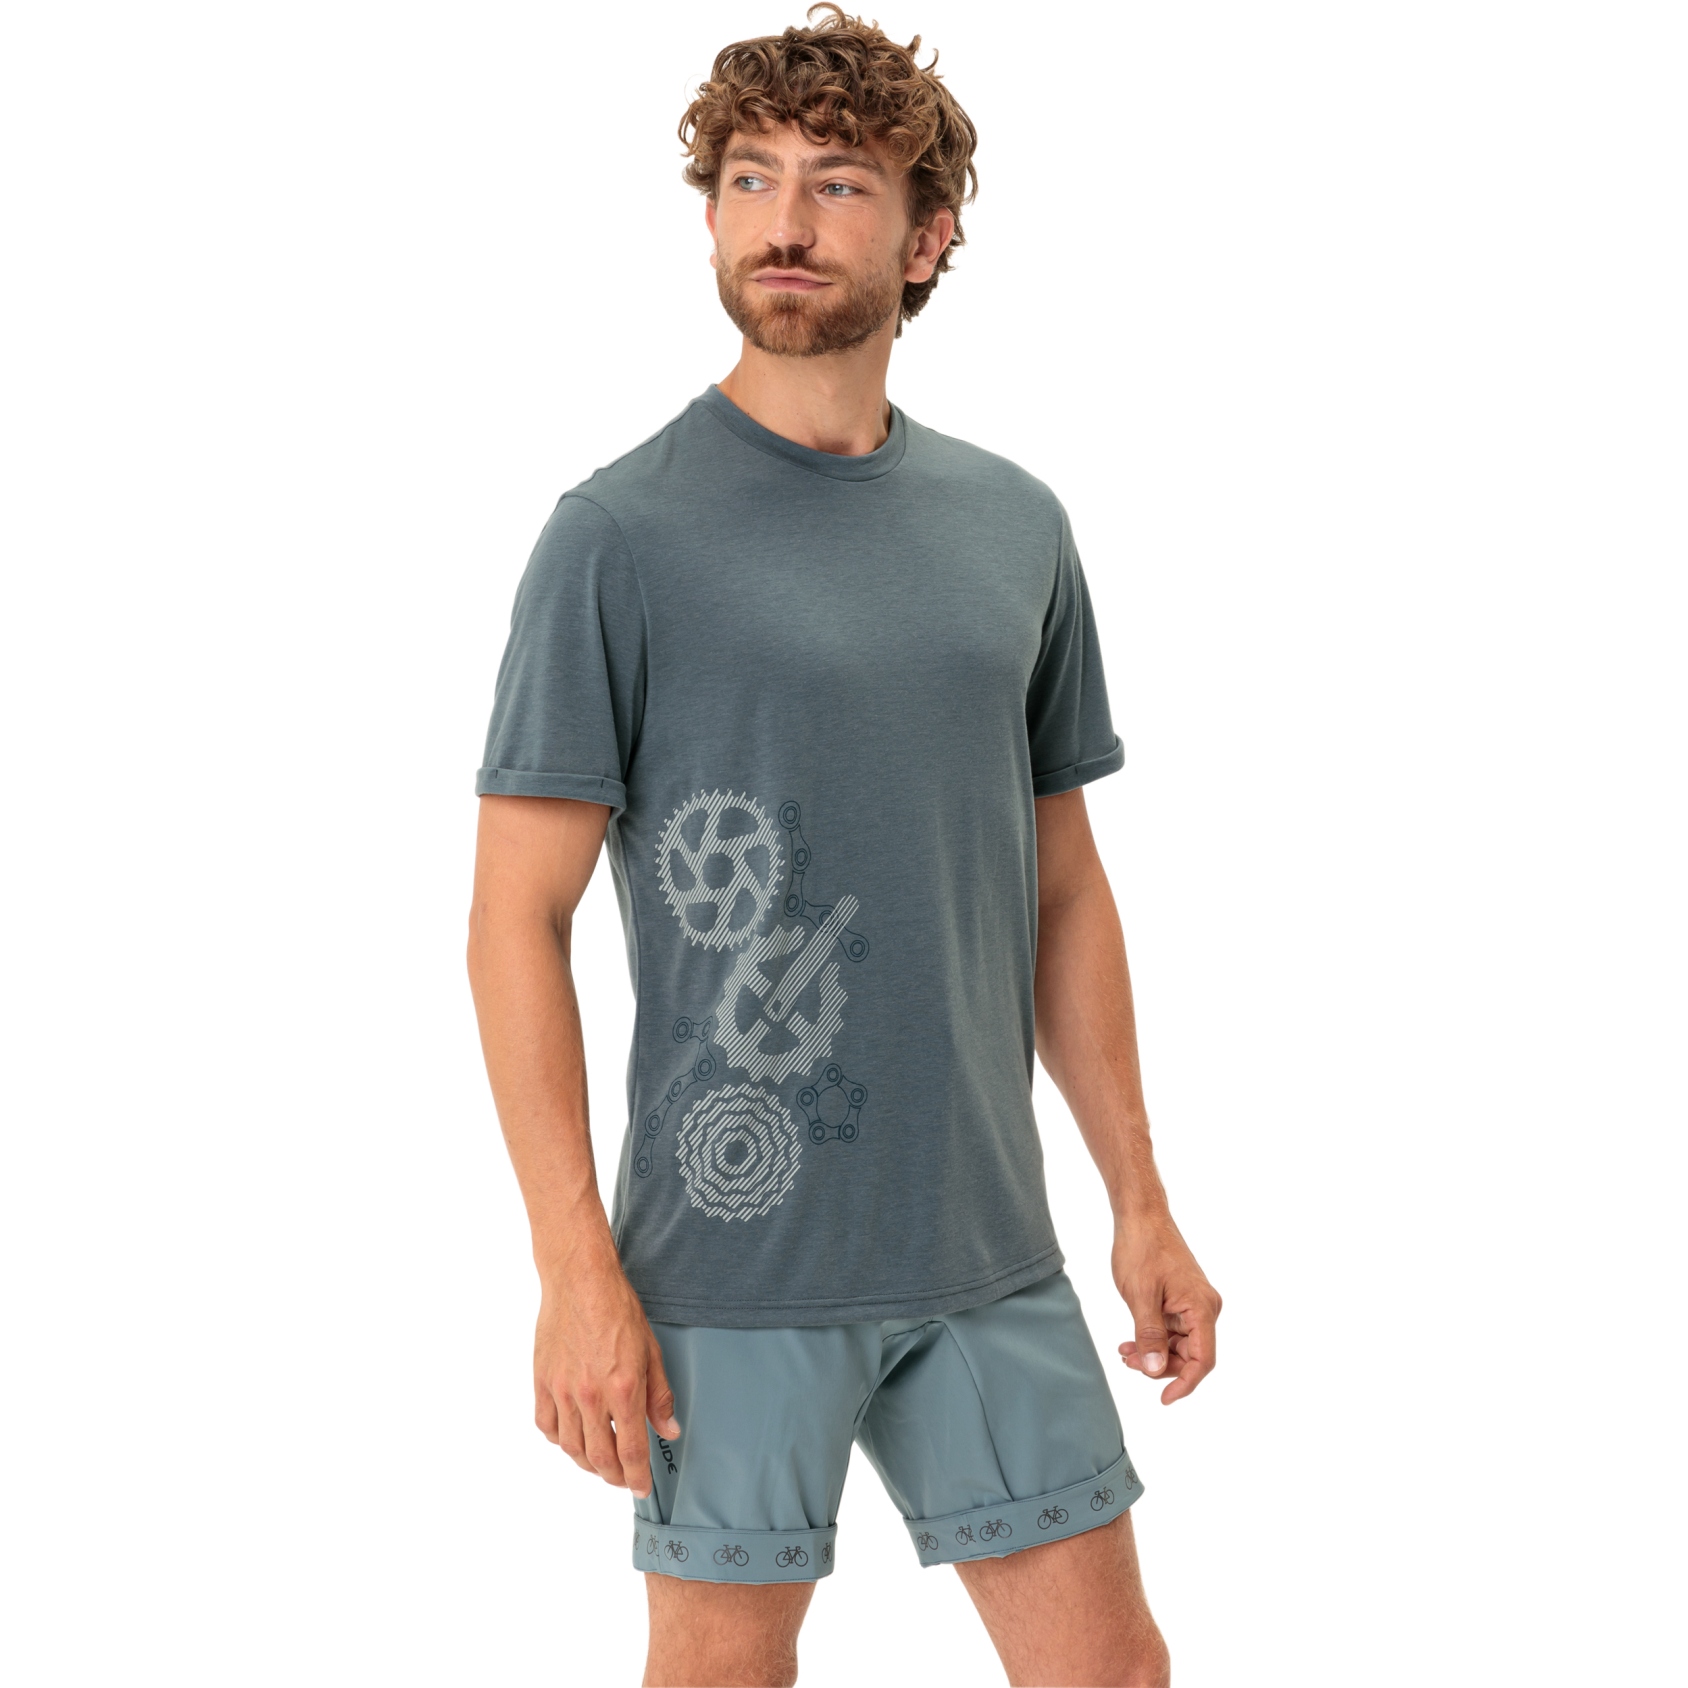 Produktbild von Vaude Cyclist 3 T-Shirt Herren - heron